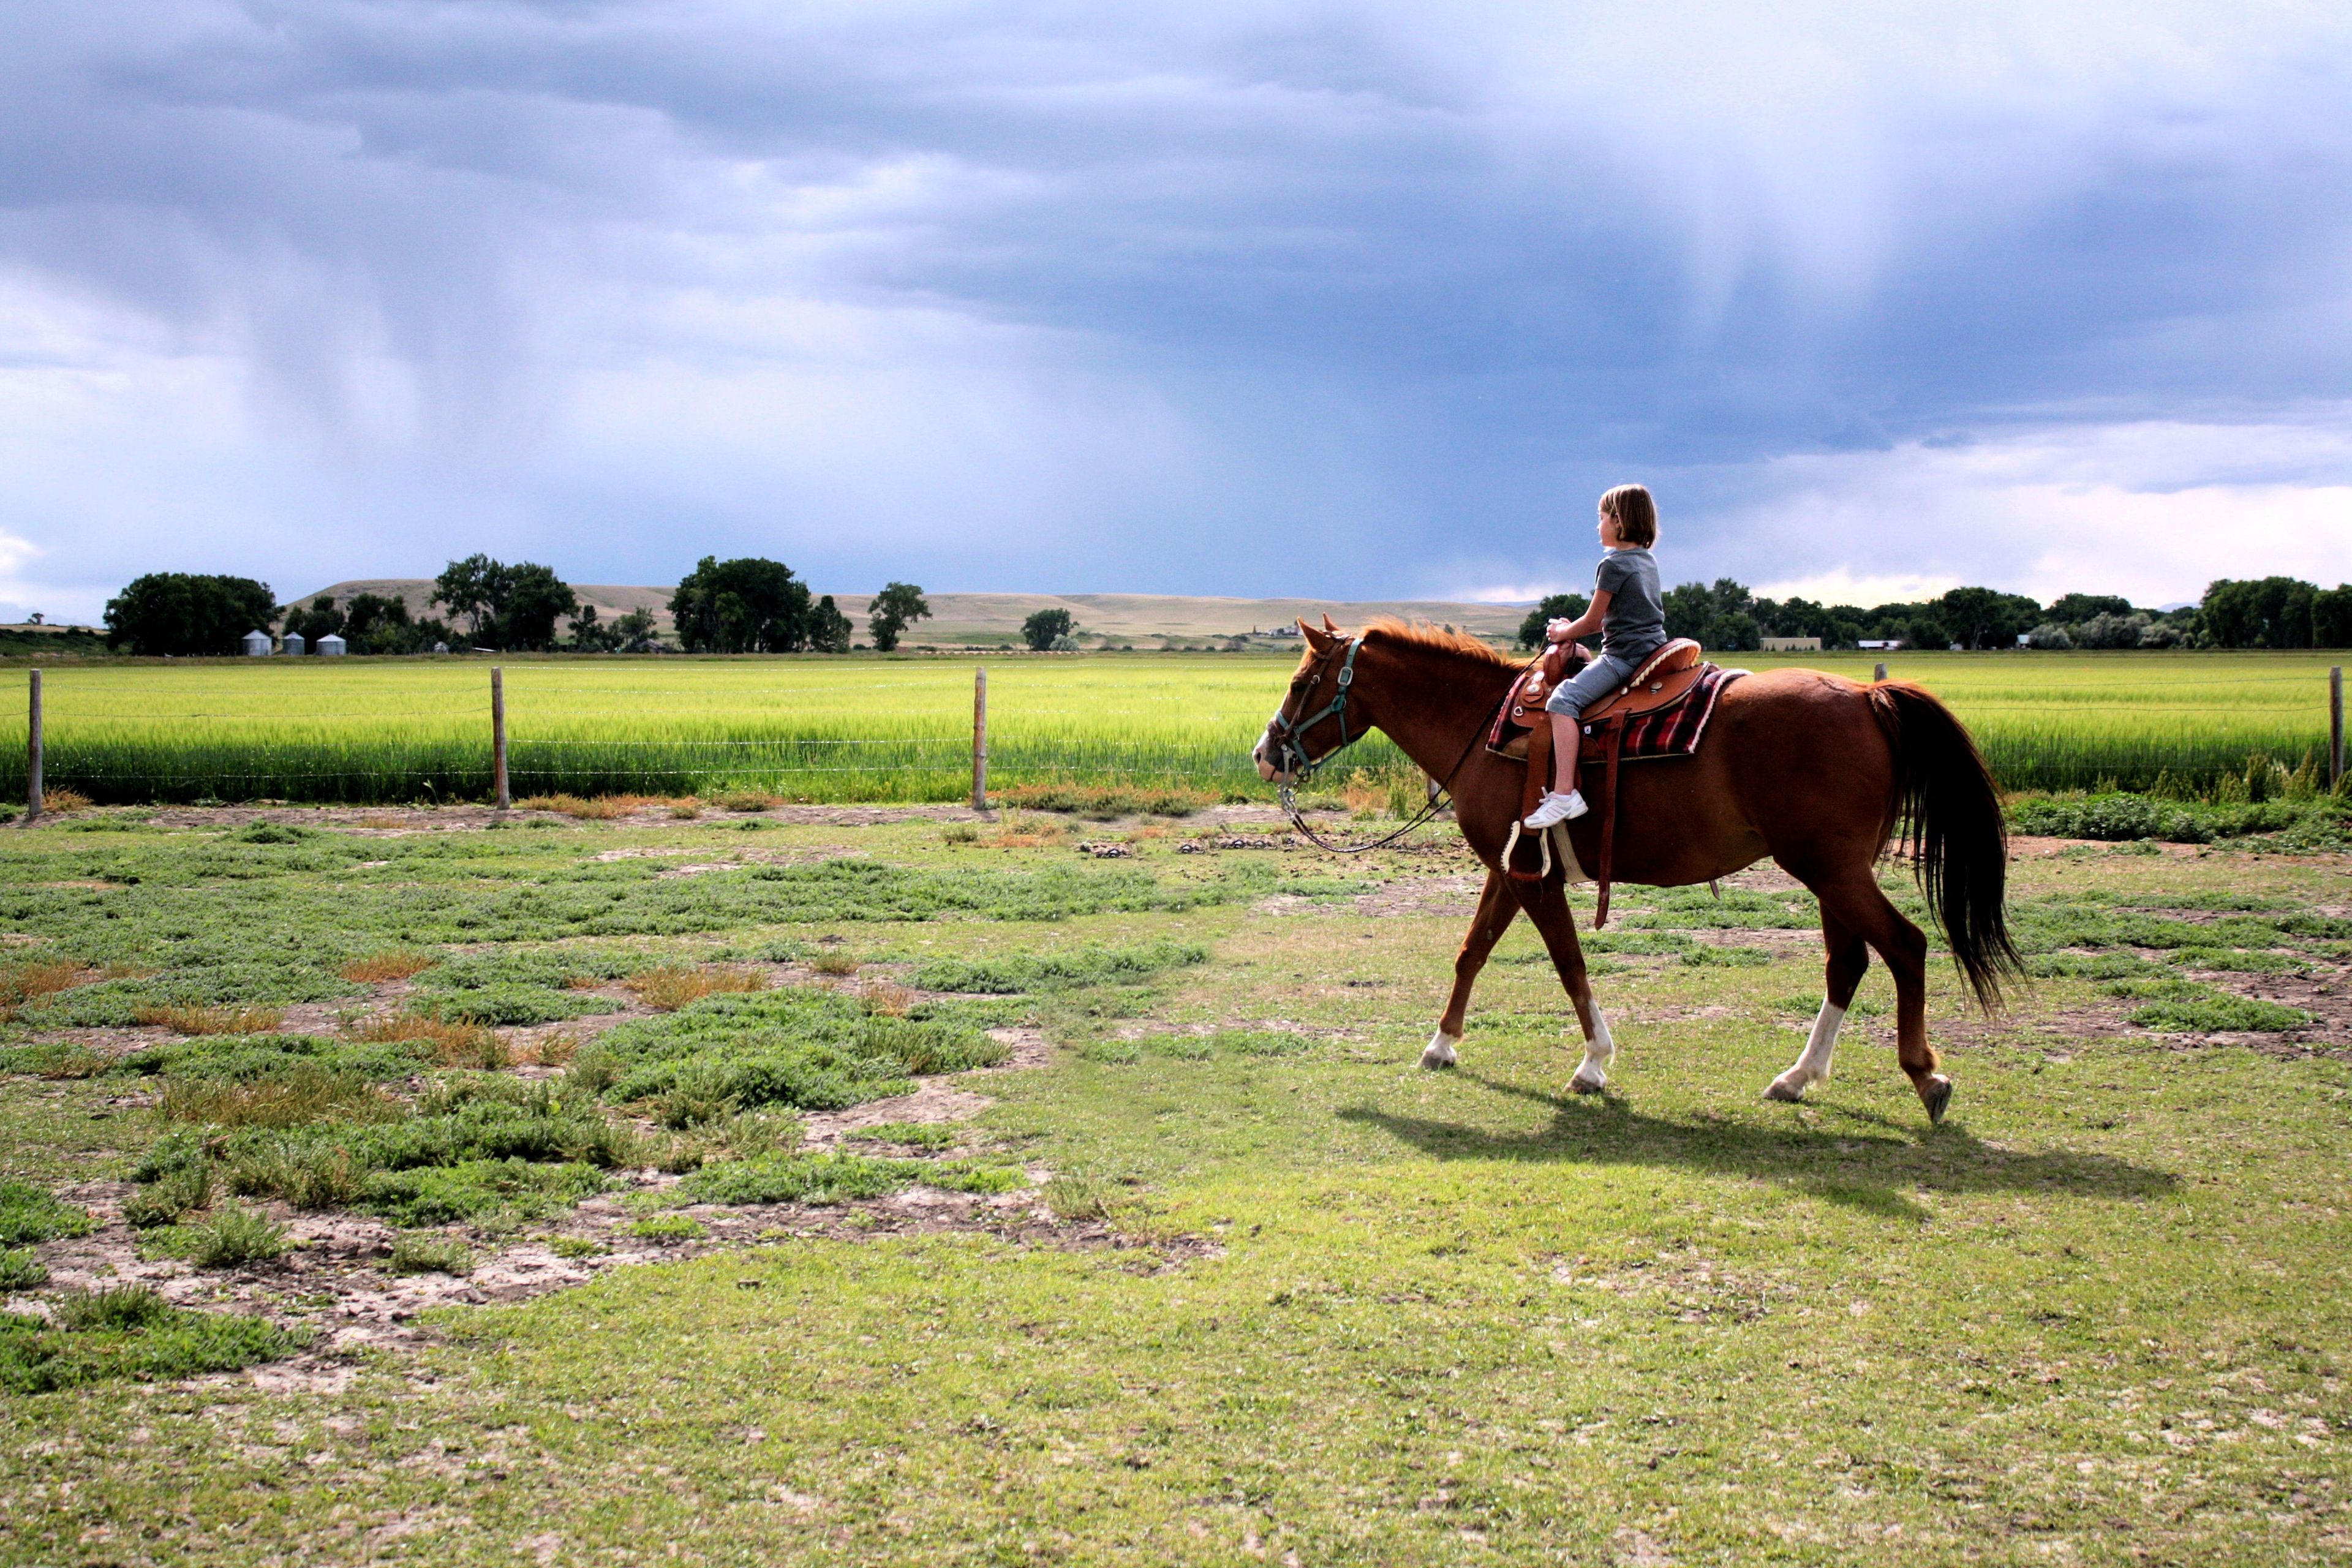 A young girl rides a horse.